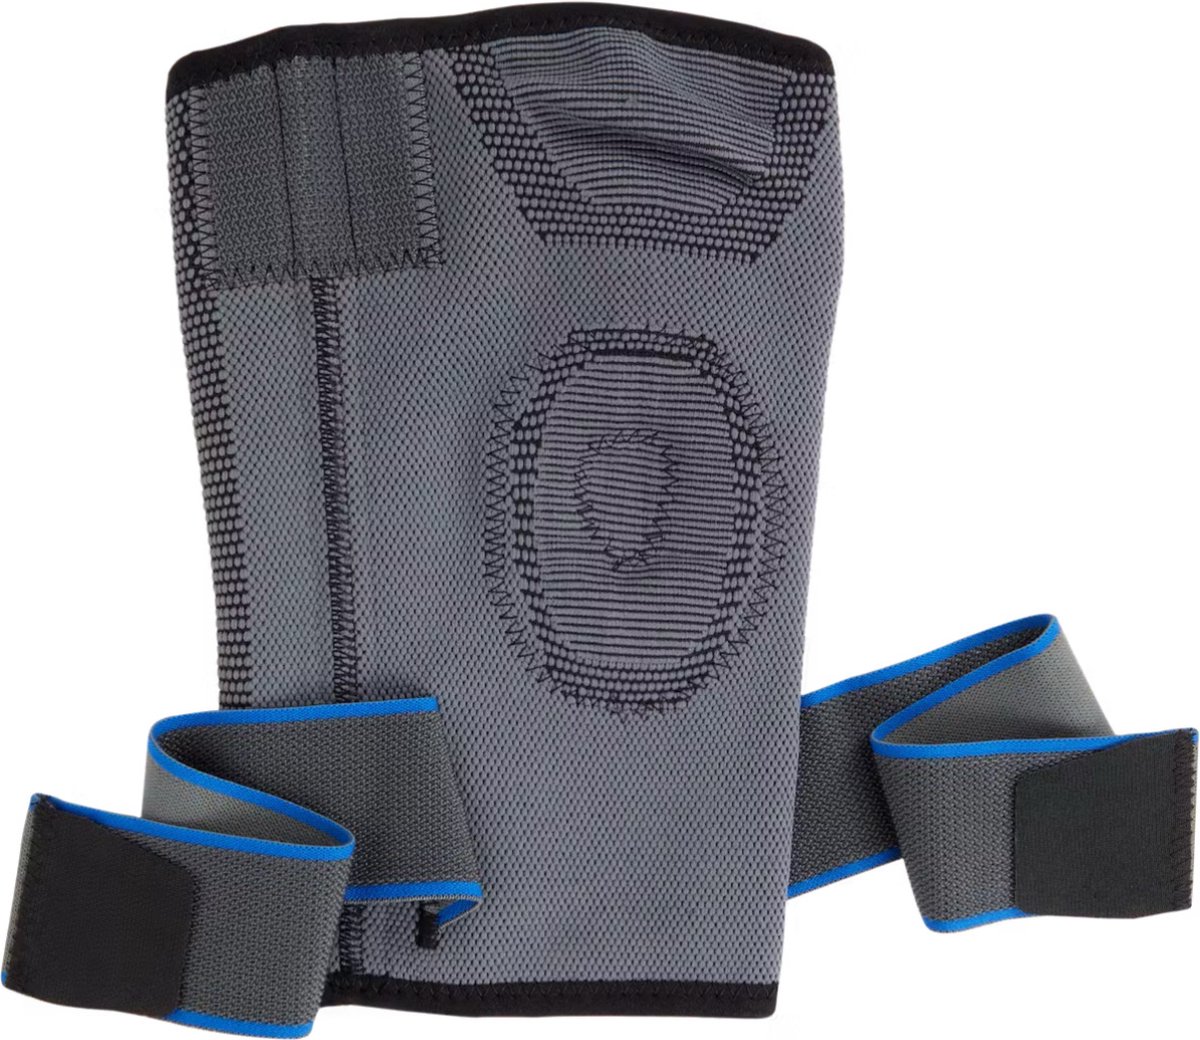 Premium Kniebrace Maat S/M - Verstelbare Kniestabilisator voor Optimaal Comfort en Ondersteuning - Geschikt voor Sport, Herstel en Dagelijks Gebruik - Ademende en Duurzame Knieband - Kniebandage